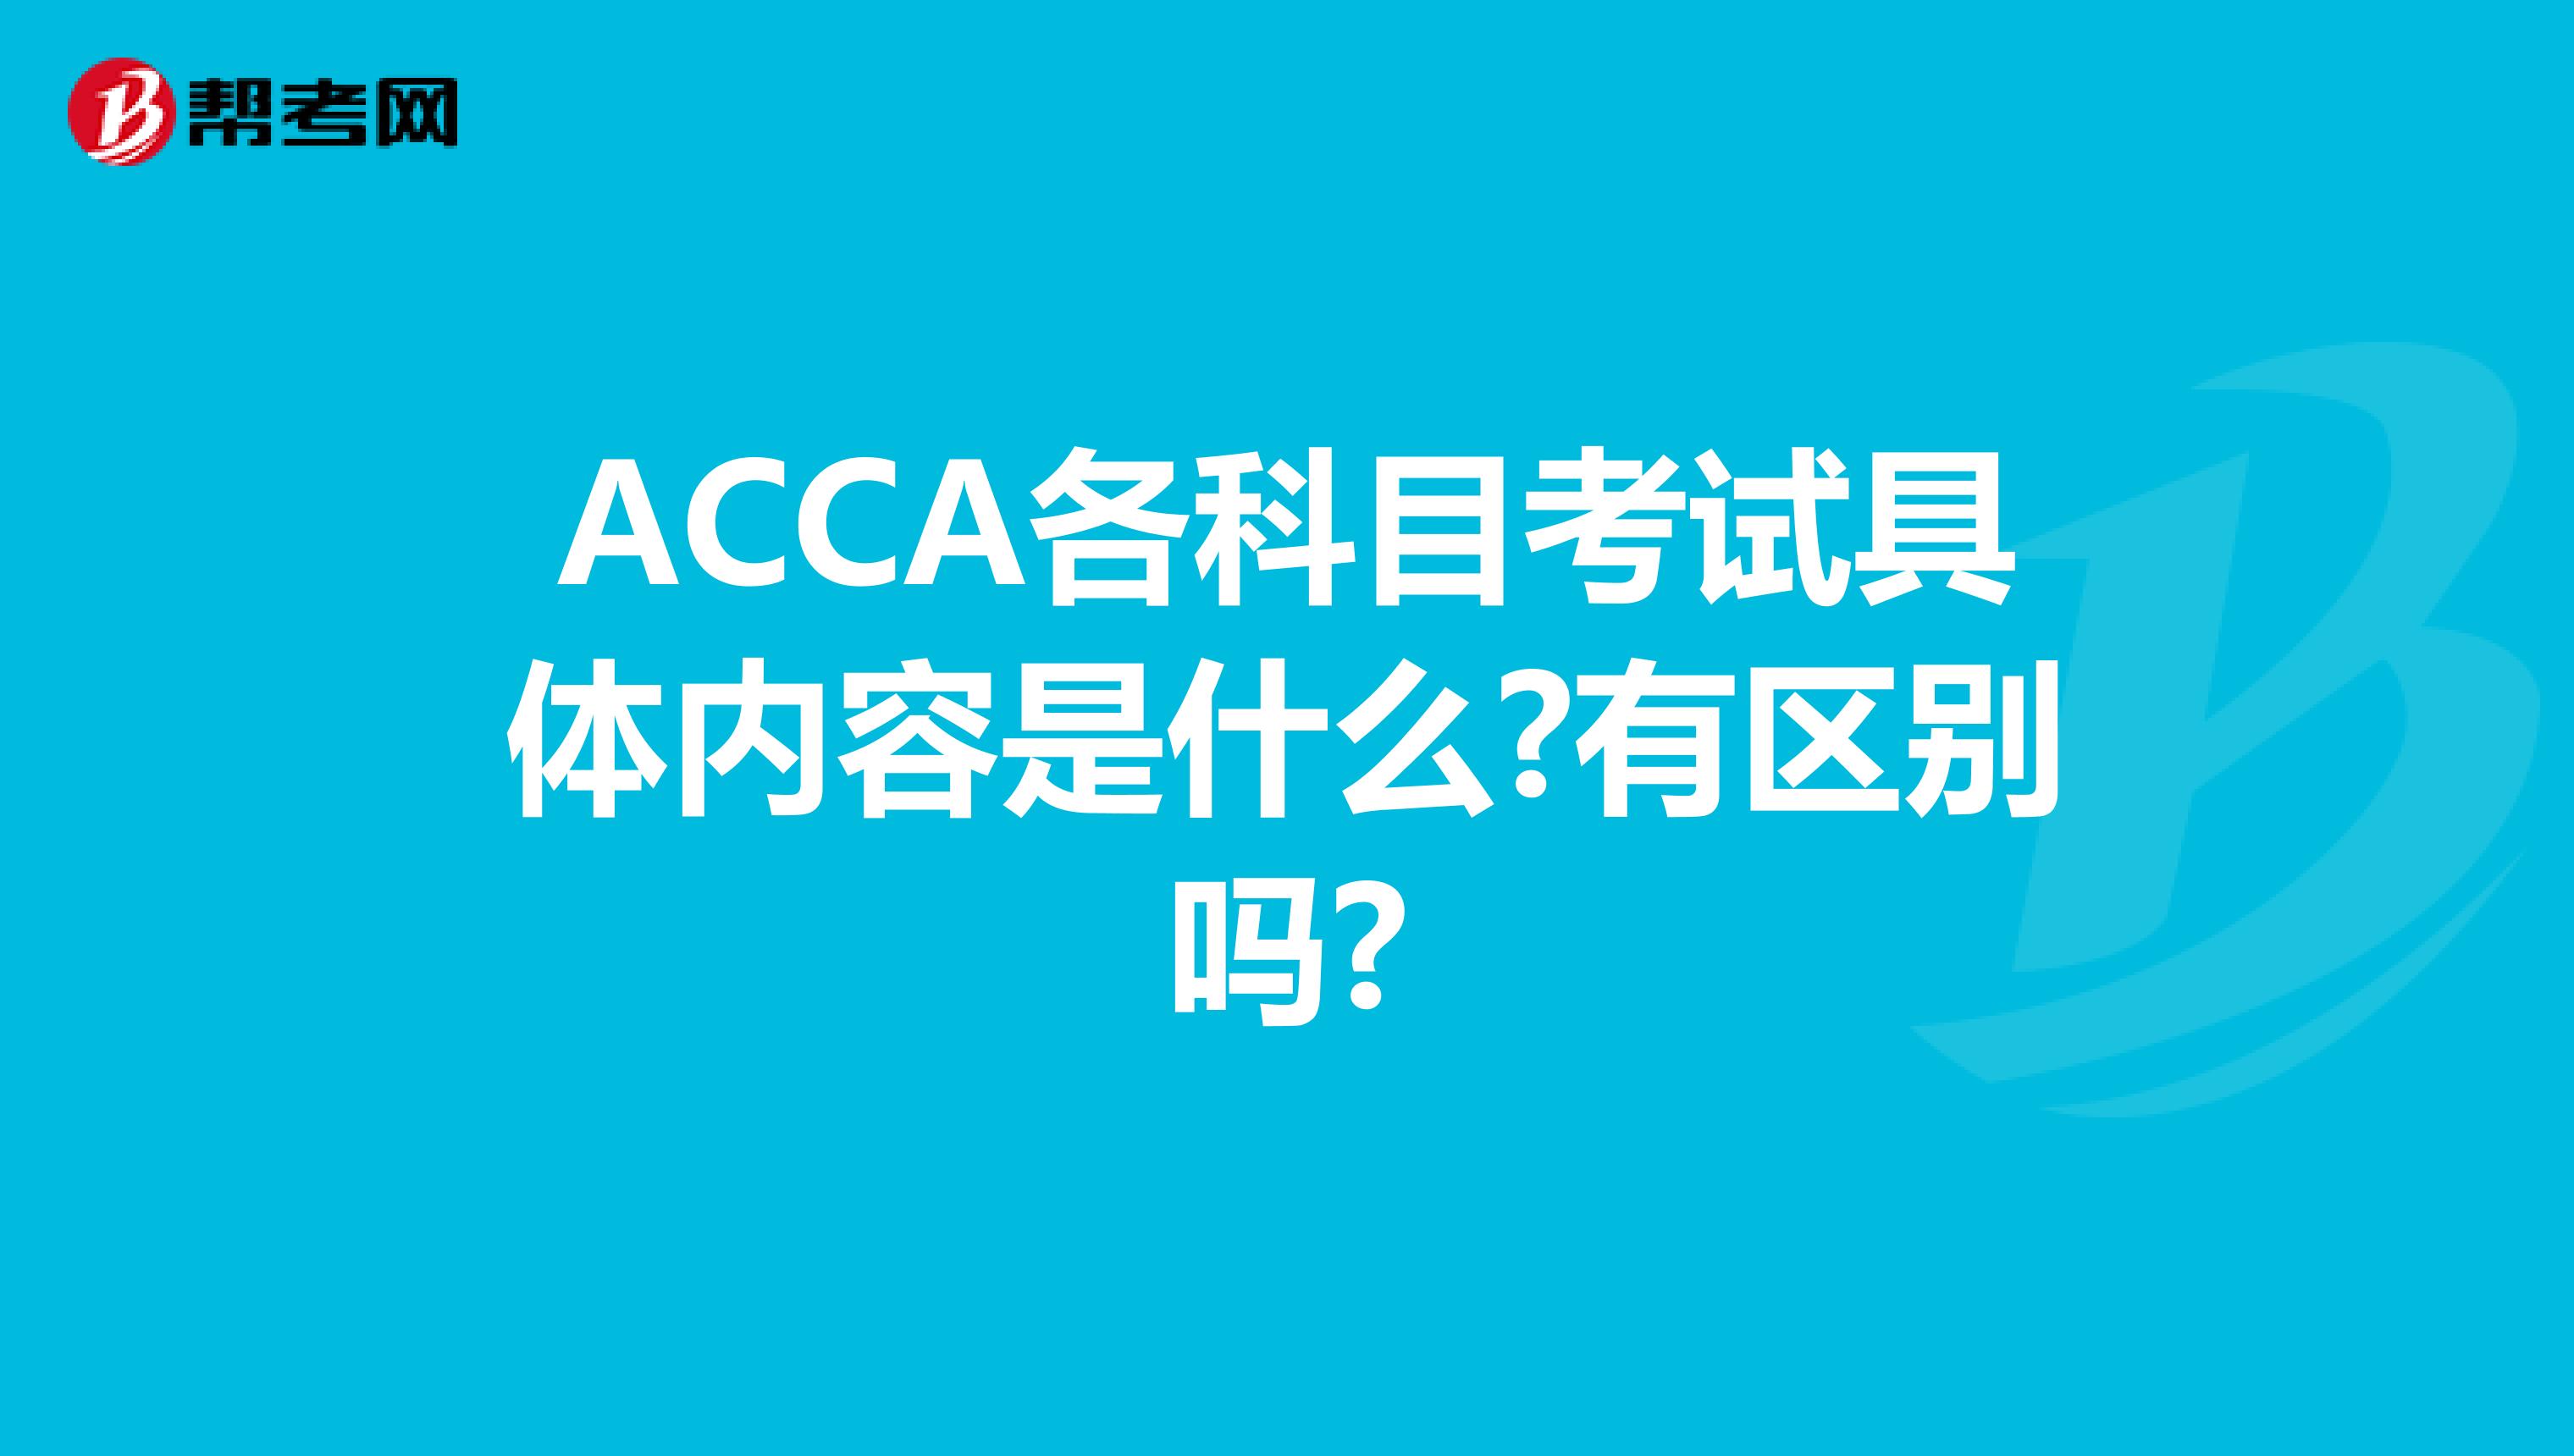 ACCA各科目考试具体内容是什么?有区别吗?